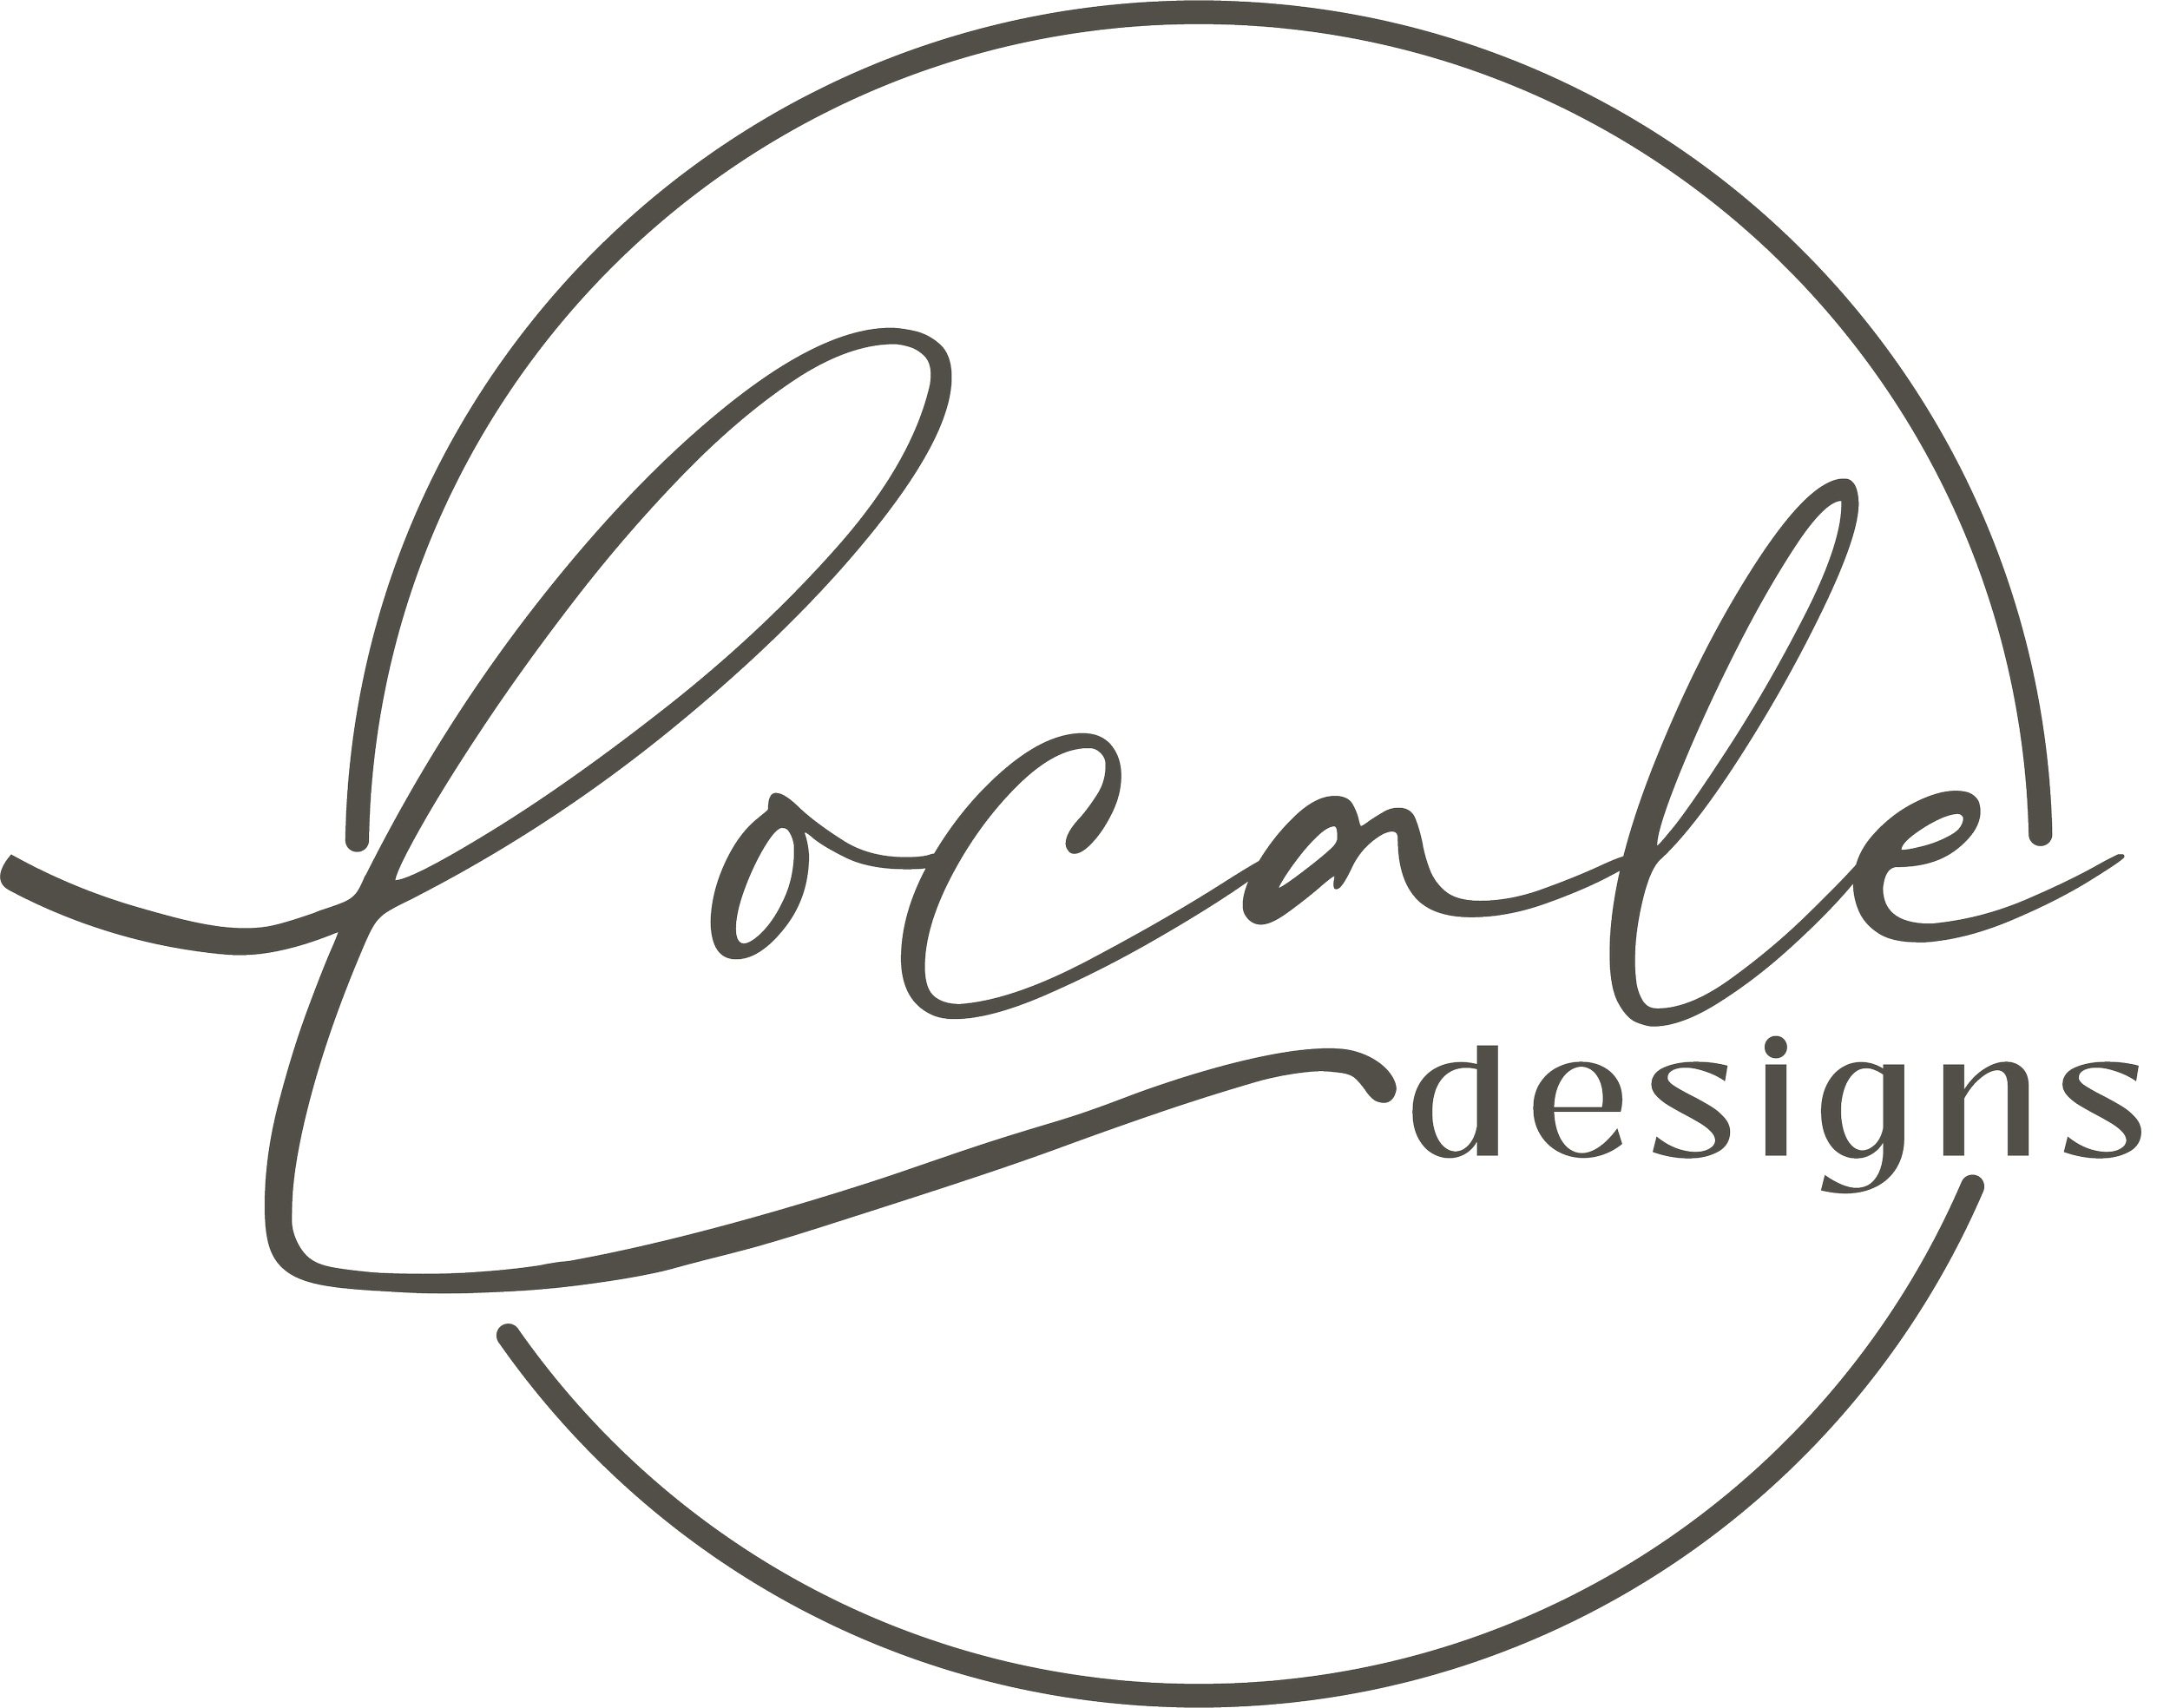 Locale Designs